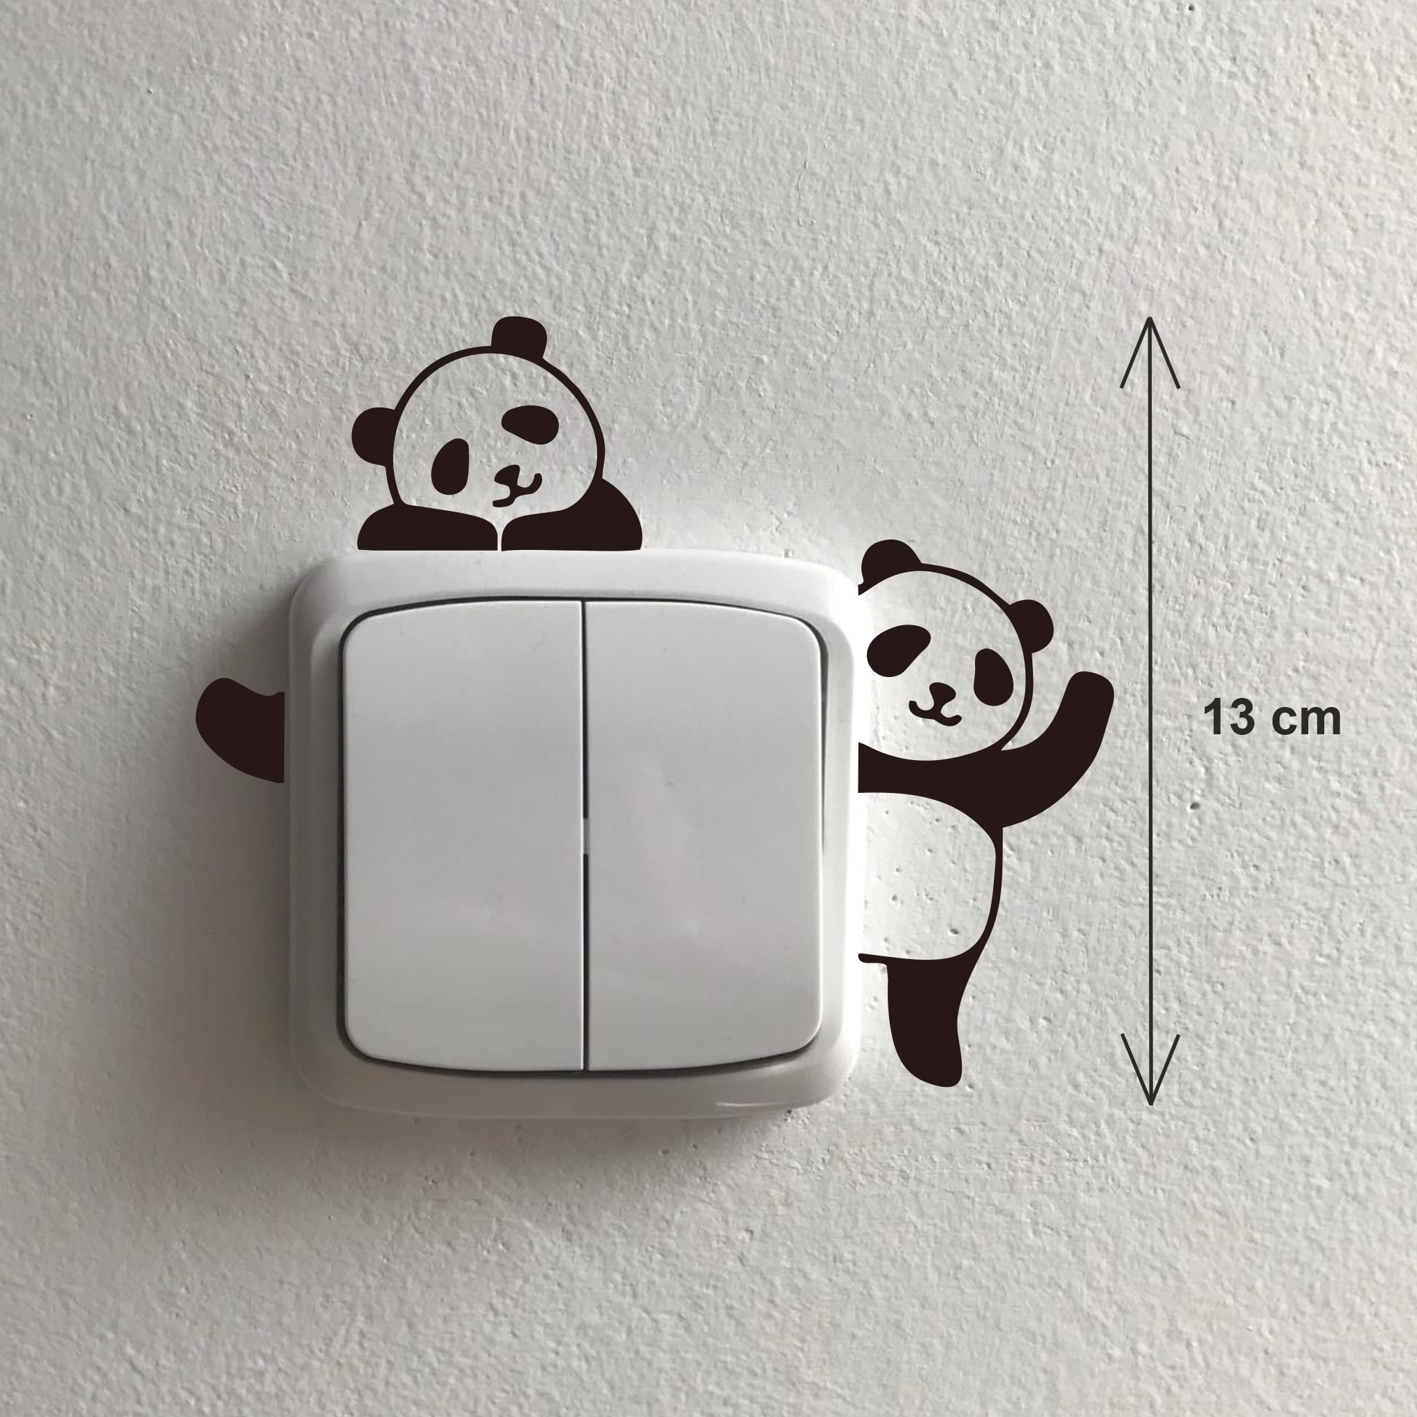 Pandy samolepka okolo vypínače